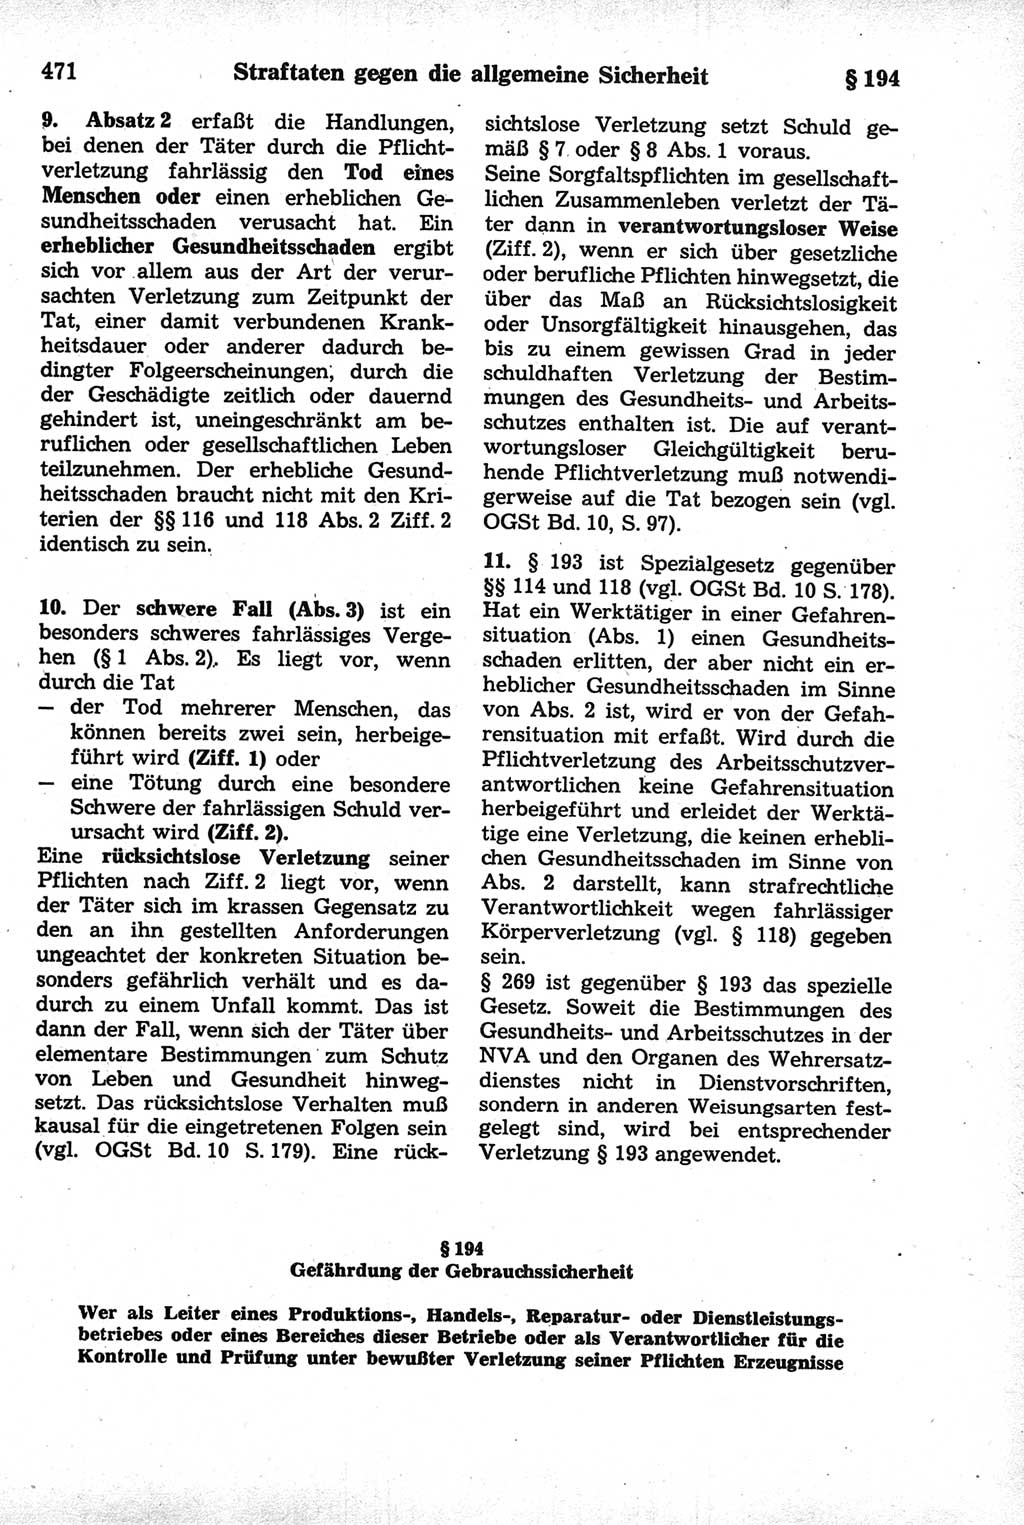 Strafrecht der Deutschen Demokratischen Republik (DDR), Kommentar zum Strafgesetzbuch (StGB) 1981, Seite 471 (Strafr. DDR Komm. StGB 1981, S. 471)